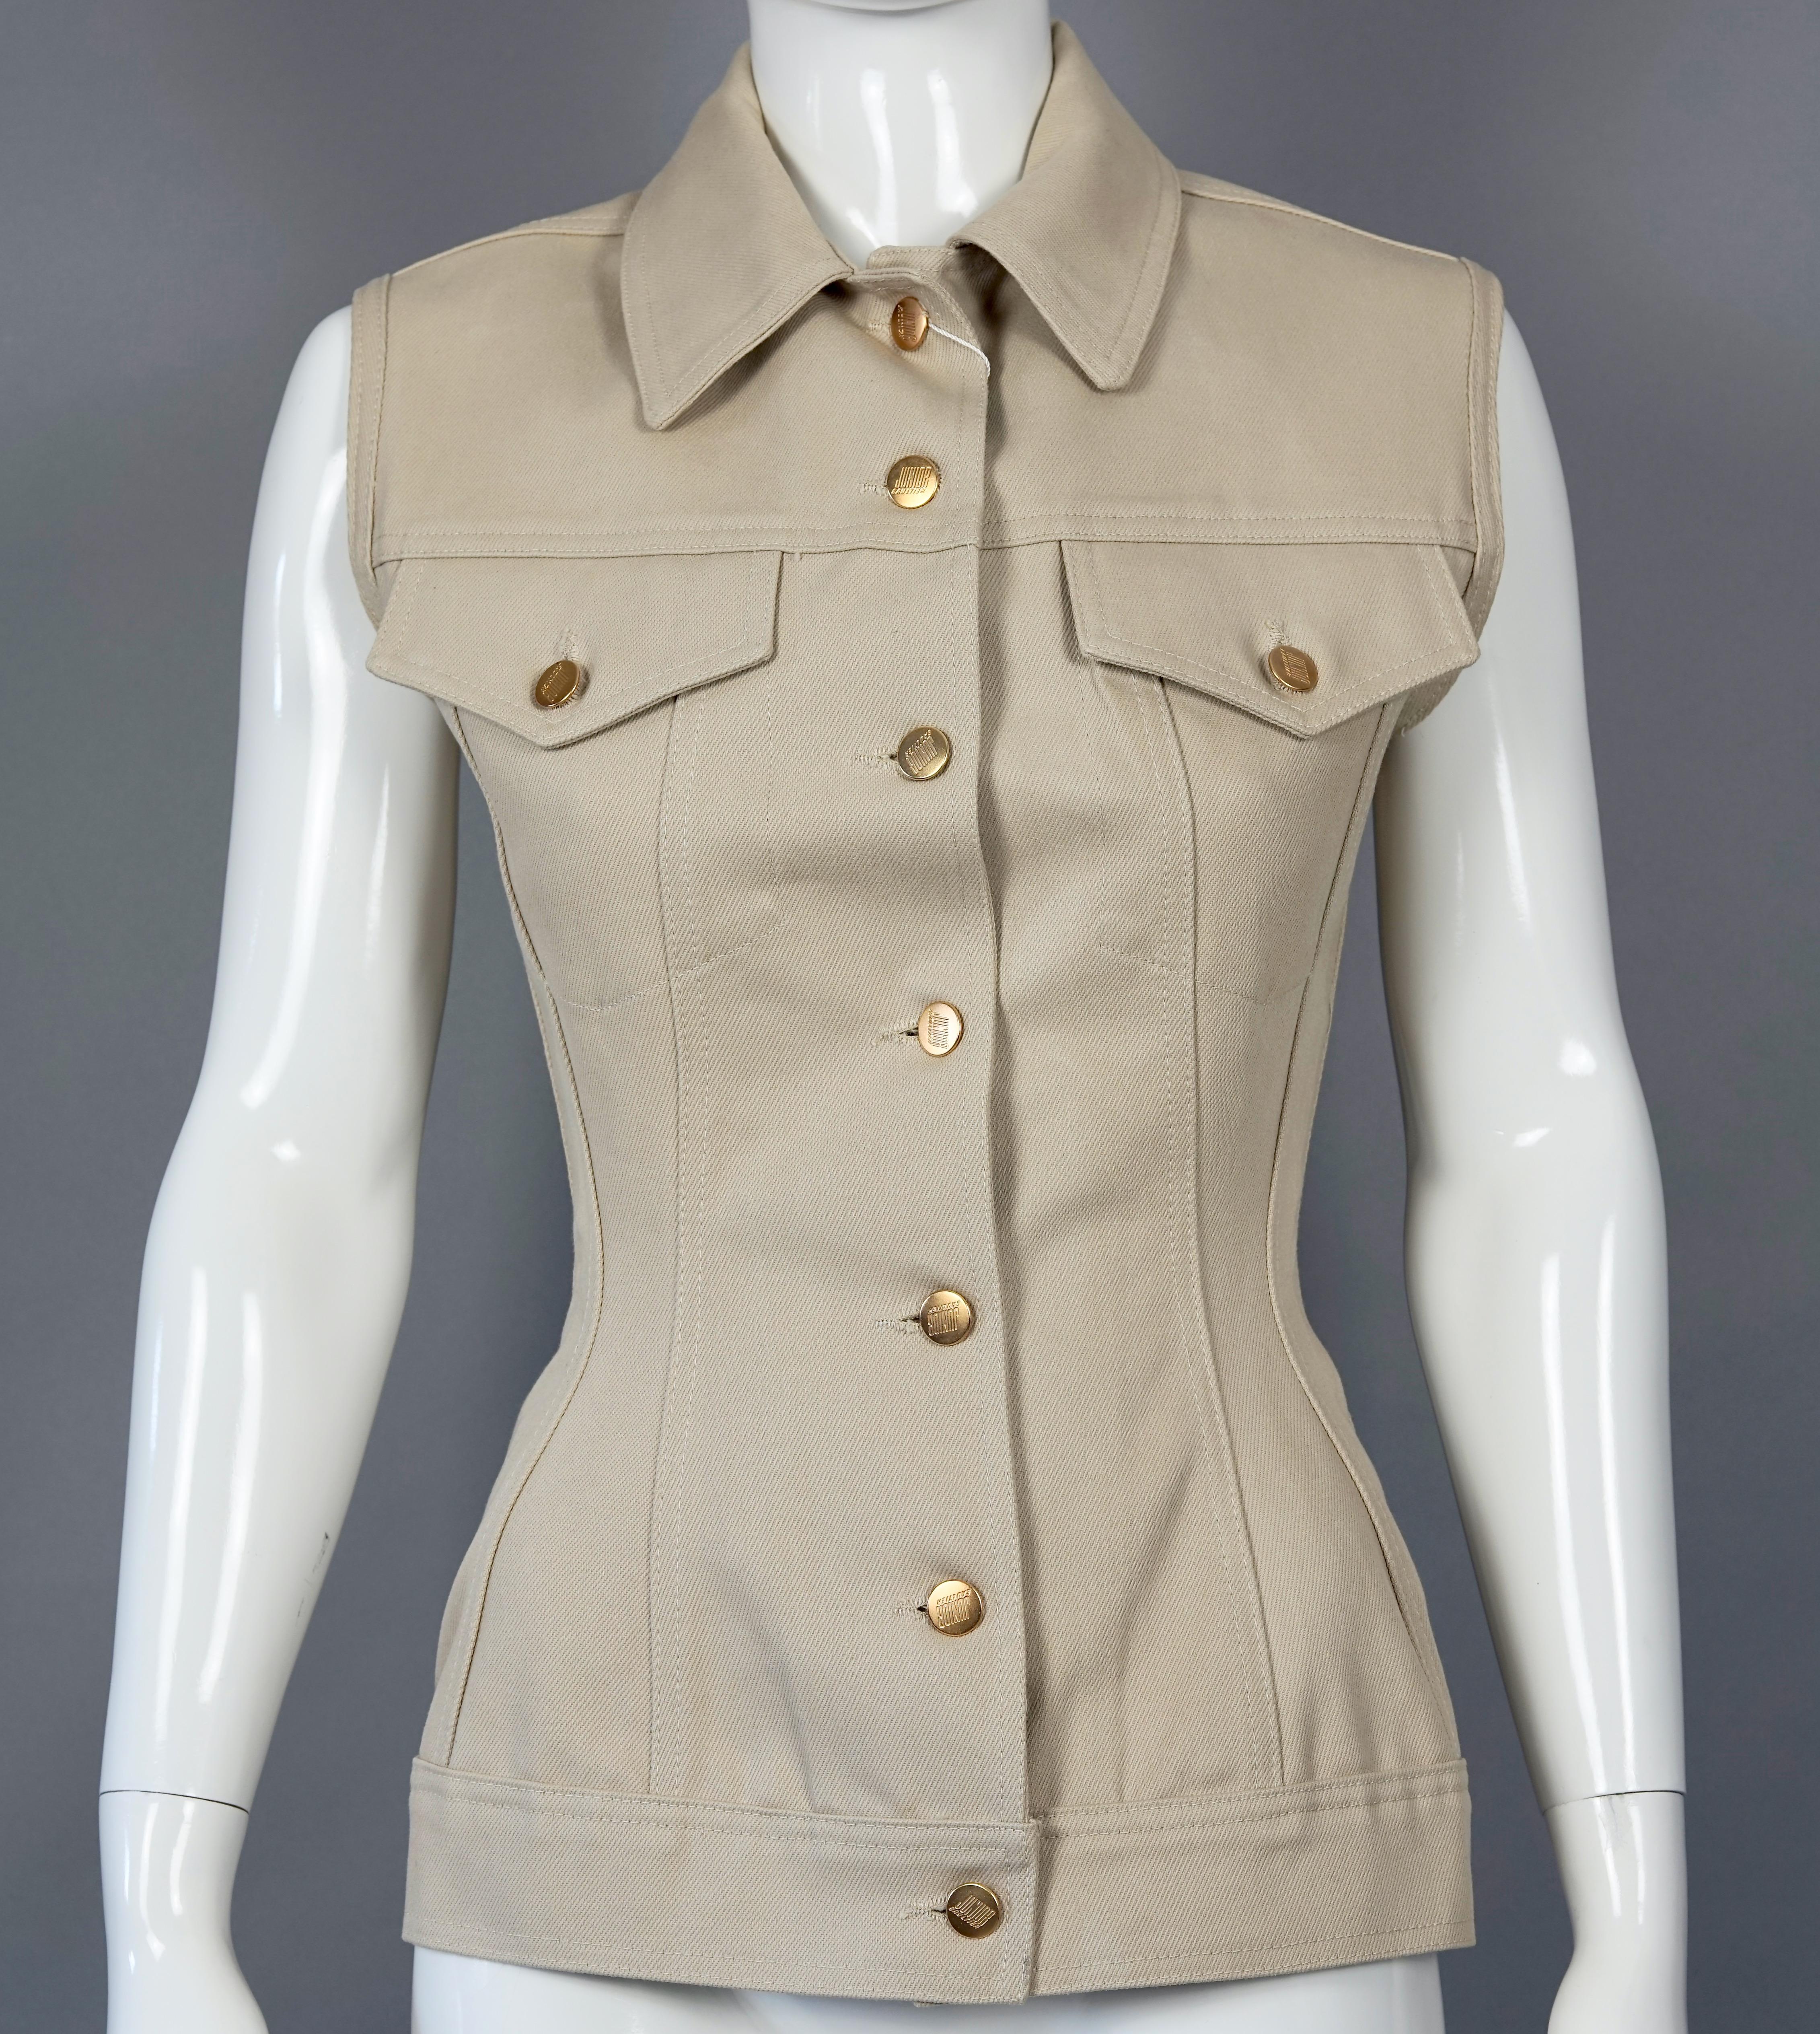 Vintage JEAN PAUL GAULTIER Iconic Lace Up Corset Vest Jacket

Measurements taken laid flat please double bust and waist:
Shoulder: 15.74 inches (40 cm)
Bust: 16.53 inches (42 cm)
Waist: 12.59 inches (32 cm)
Length: 24.40 inches (62 cm)

Features:
-